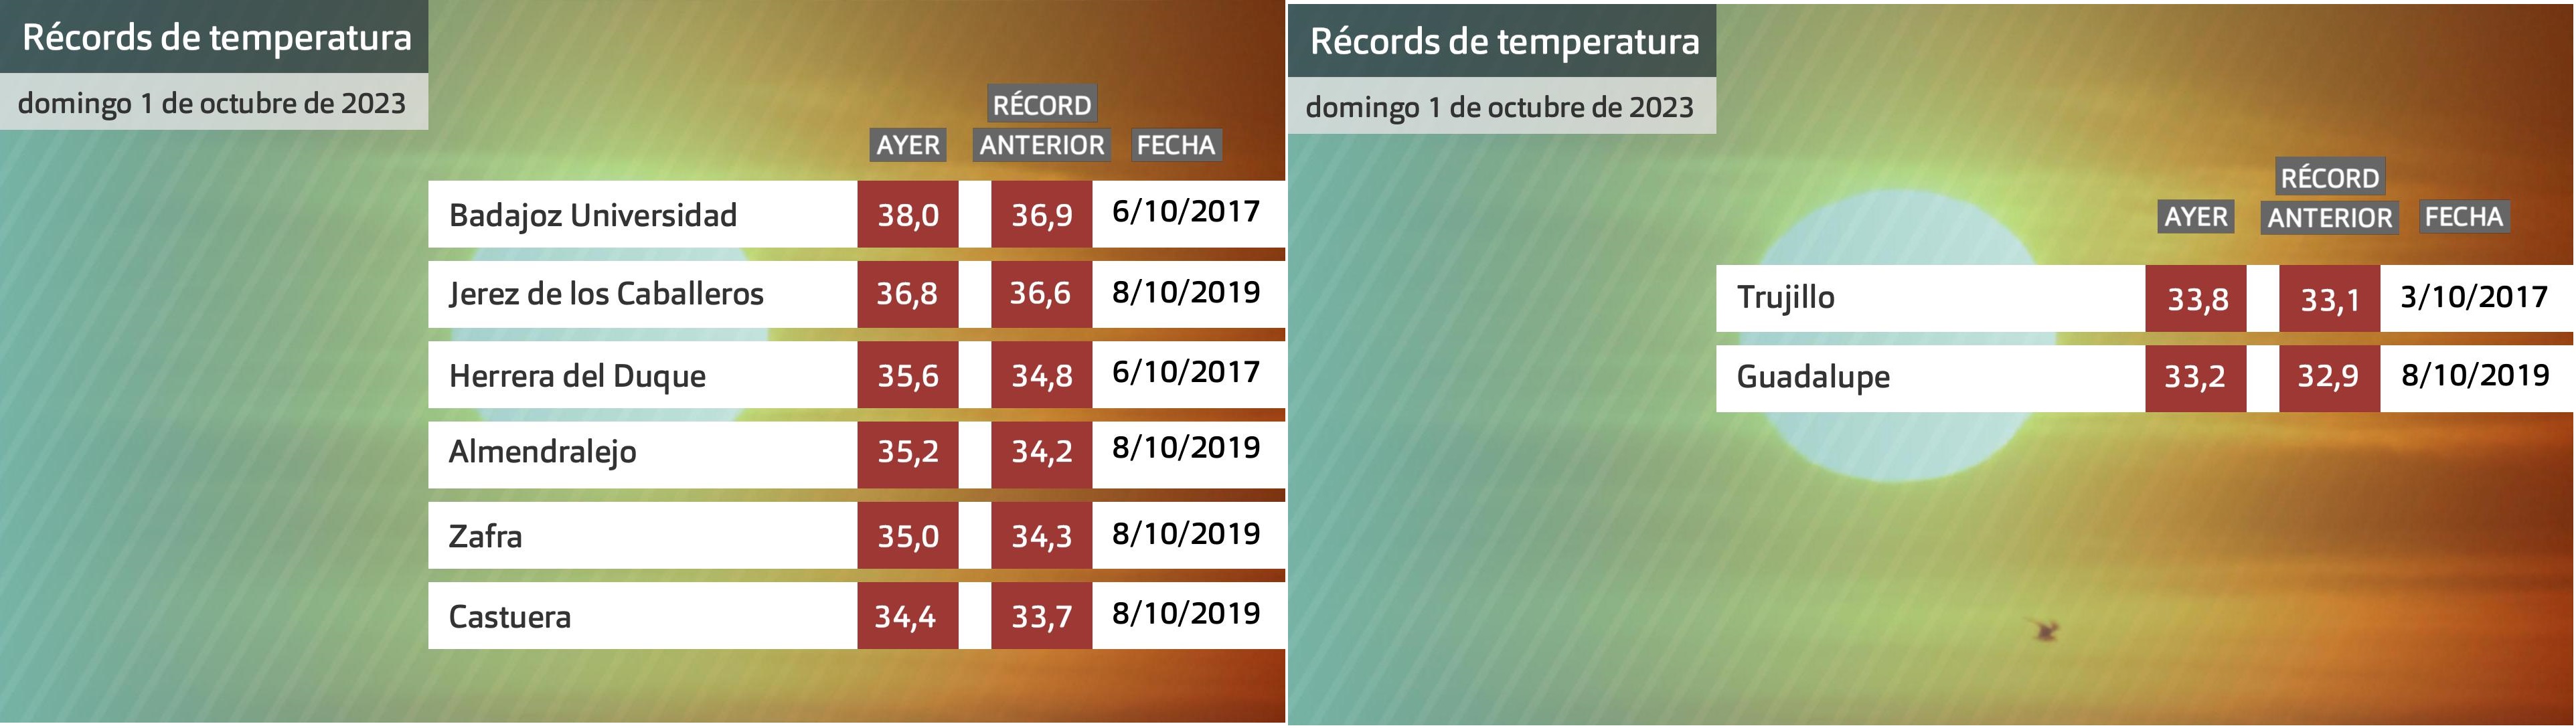 Récords de temperatura máxima para octubre batidos ayer domingo 1 de octubre